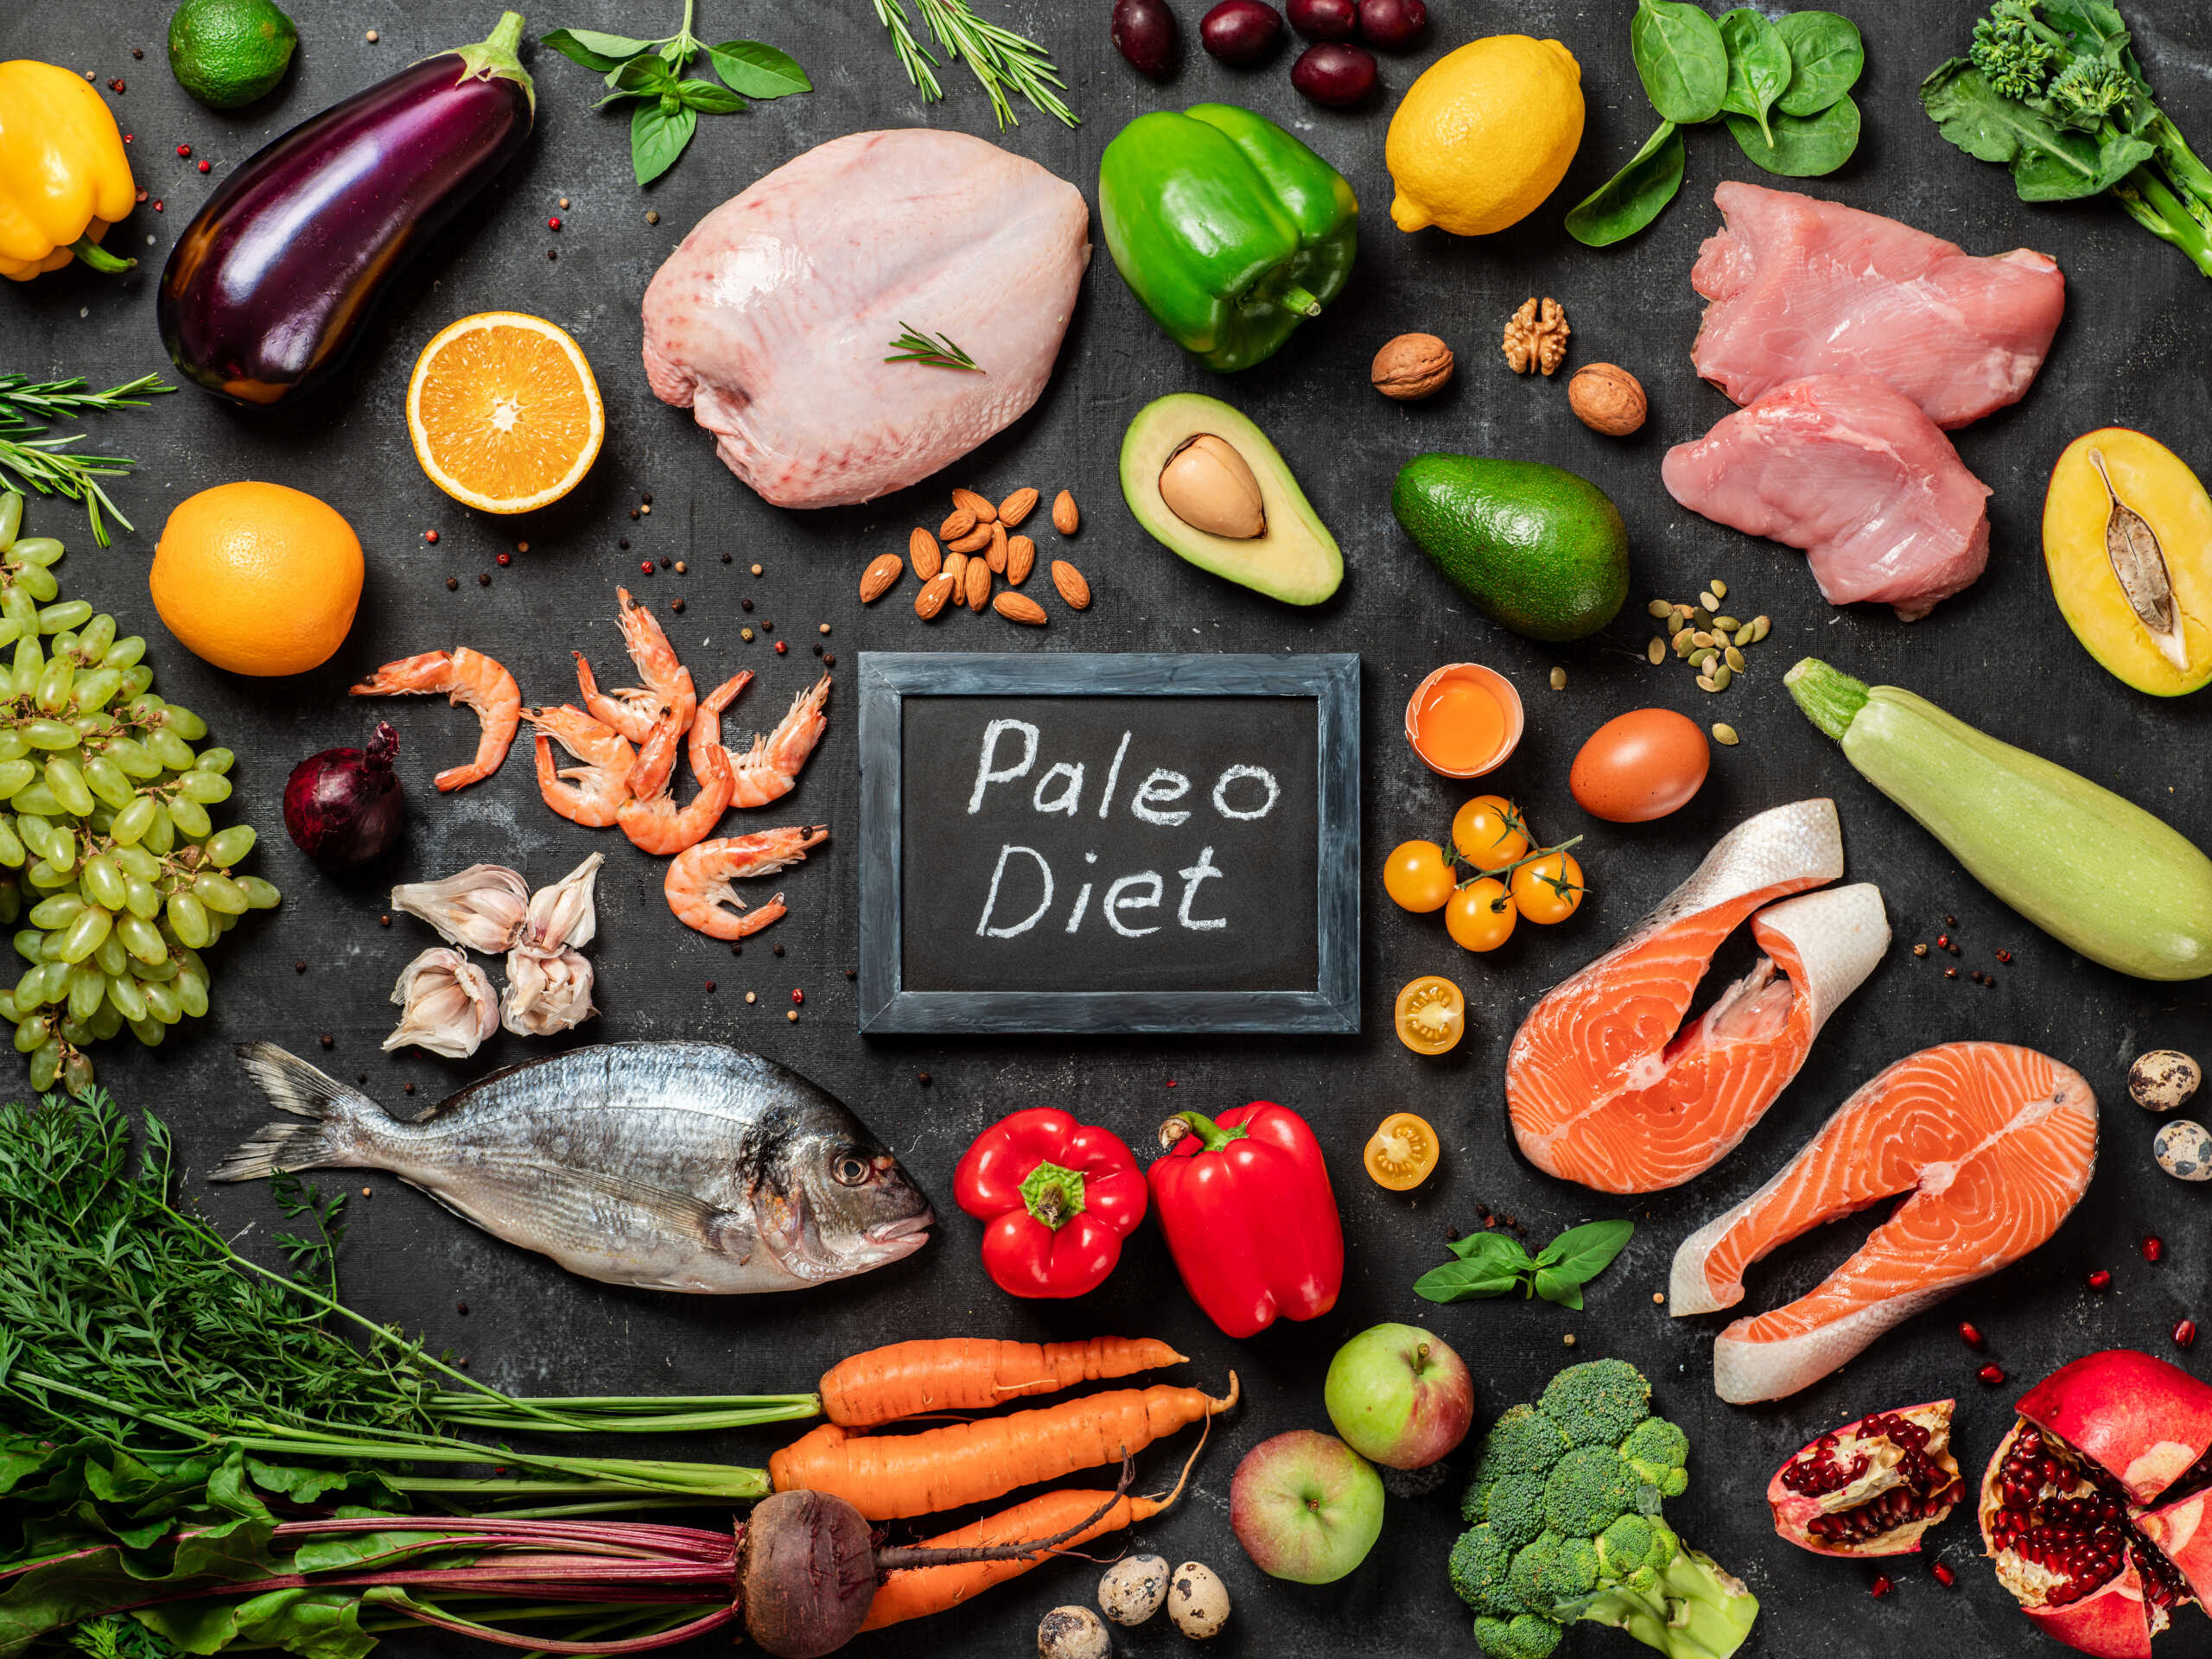 Chế độ ăn Paleo là gì? Tìm hiểu thực đơn Paleo giúp giảm cân 1 tuần.